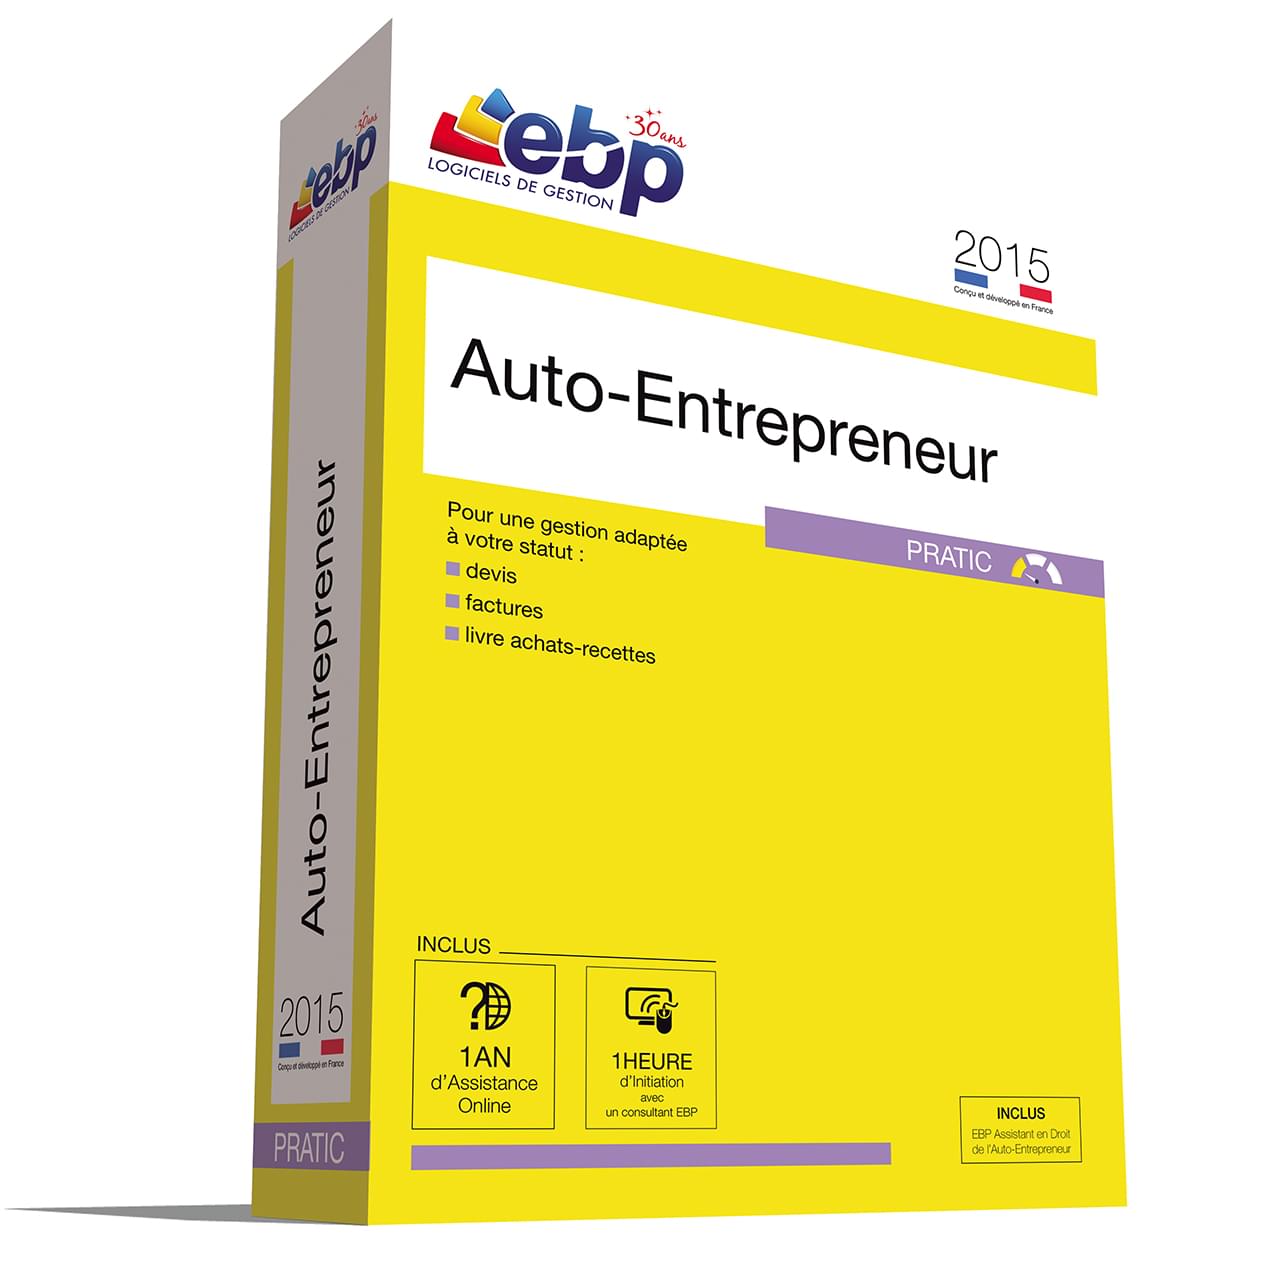 Logiciel application EBP Auto-Entrepreneur Pratic 2015 + VIP